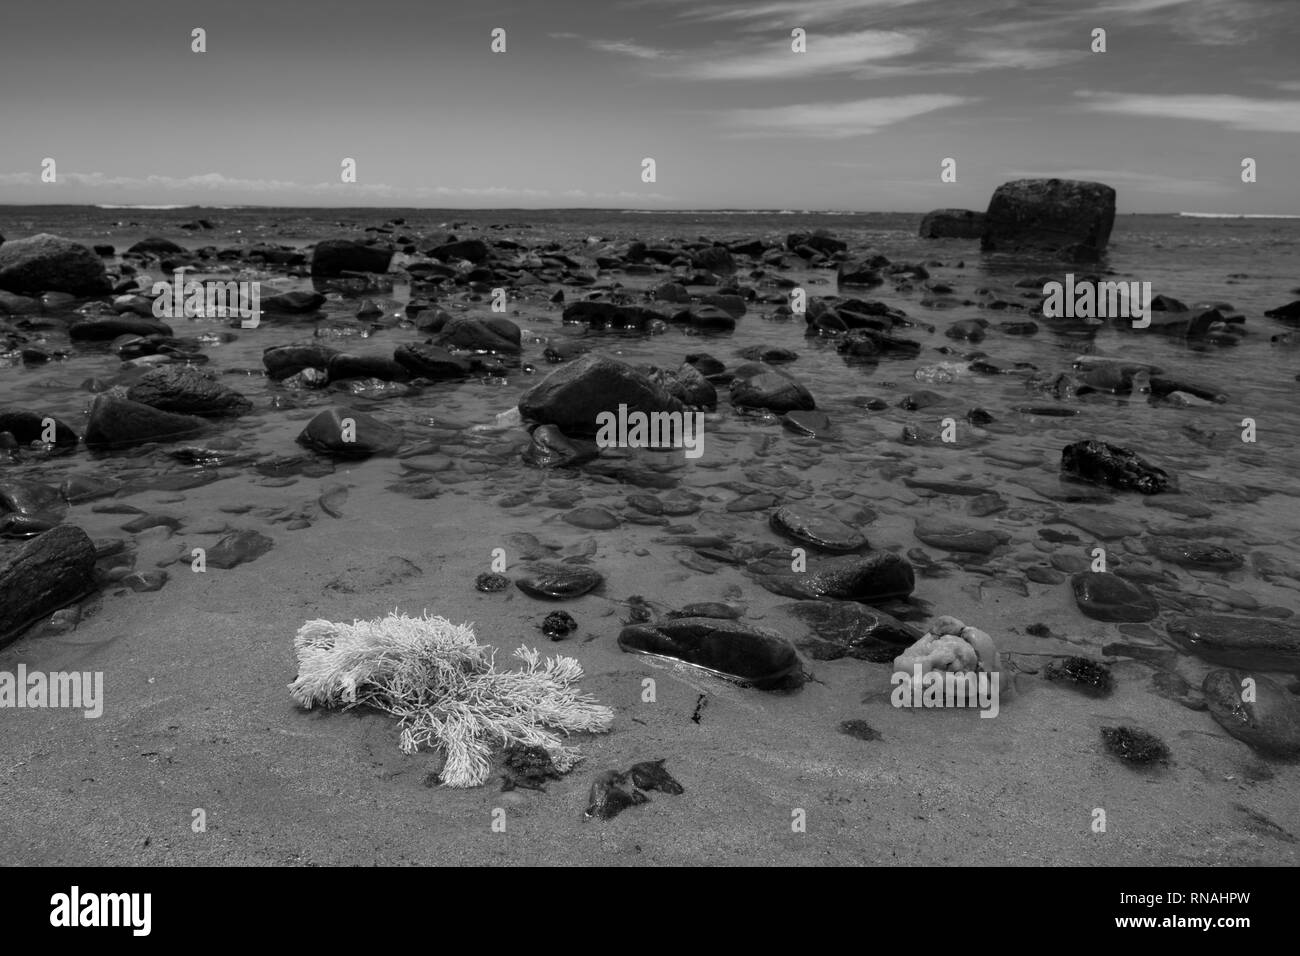 Les algues coralliennes mortes sur la plage Banque D'Images